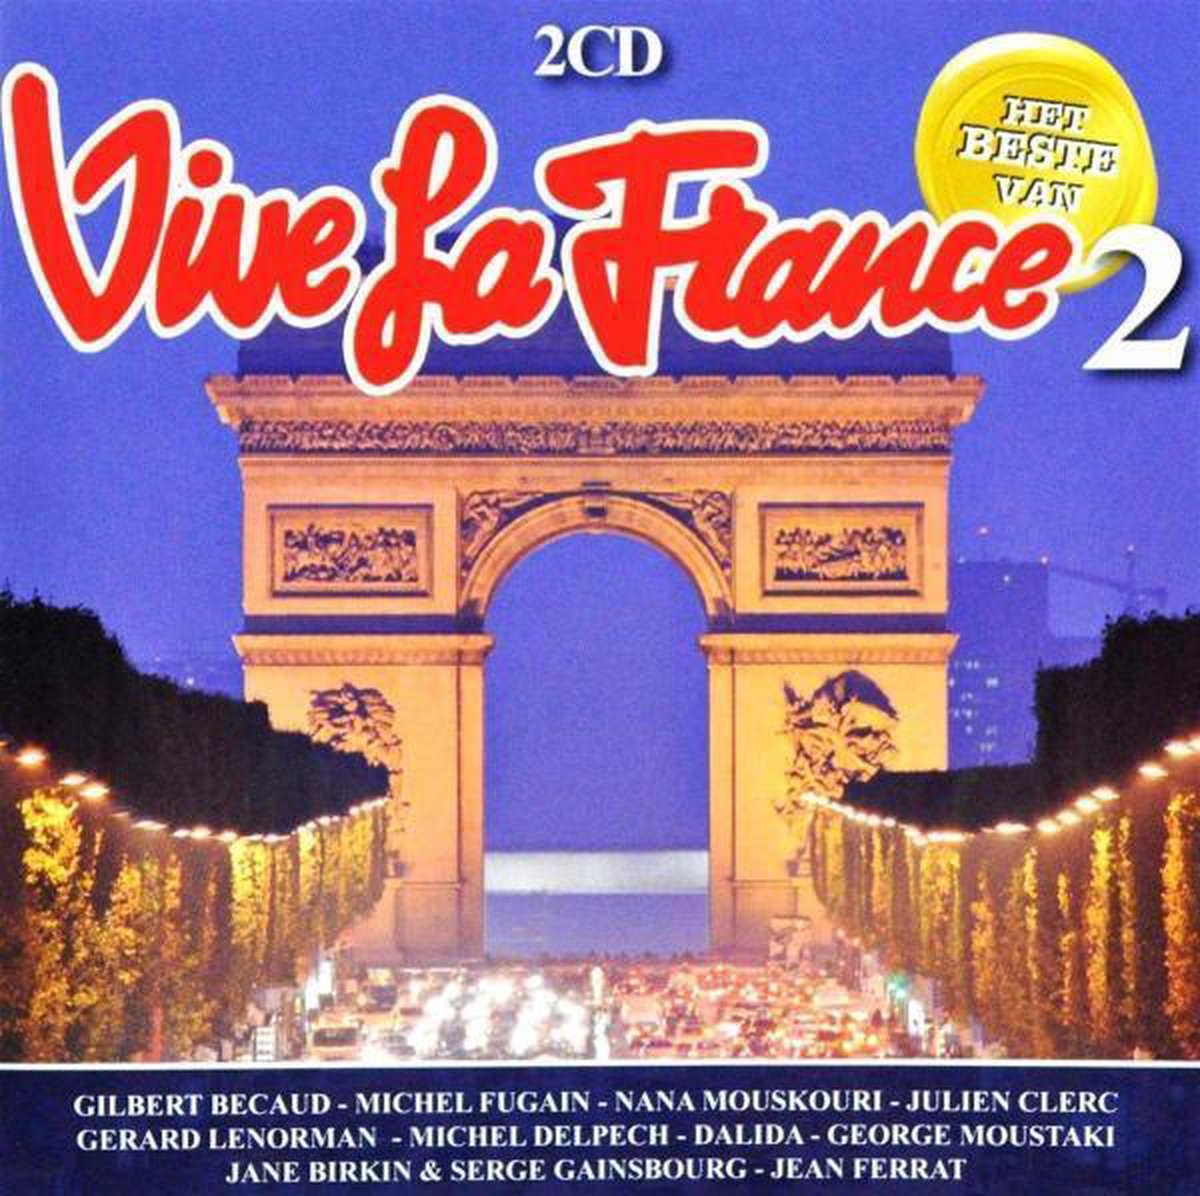 Vive la France - Les plus belles chansons! 2 